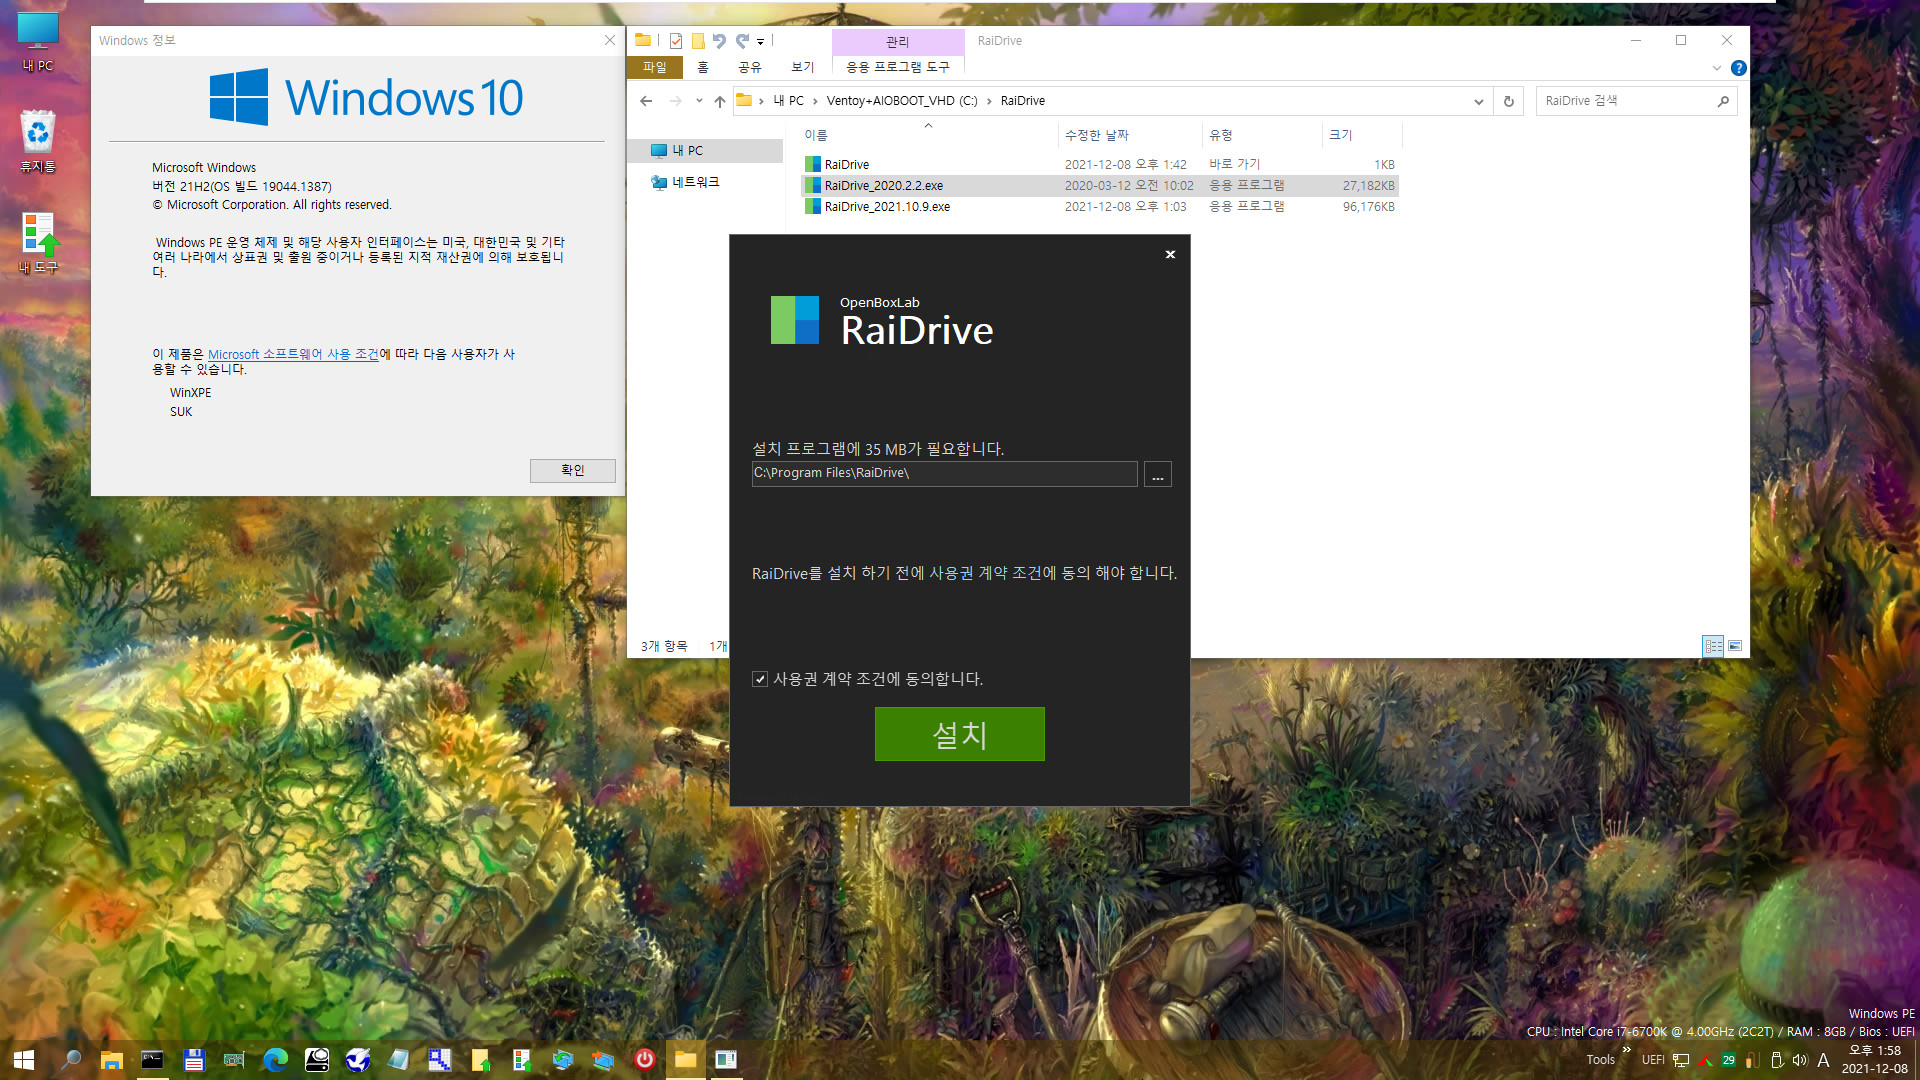 PE에서 RaiDrive 첫 설치 테스트 - WindowsXPE132 으로 Windows 10 (19044.1387) 통합본으로 PE 만들어서 테스트 - 여러번 시도하여 성공함 2021-12-08_135833.jpg